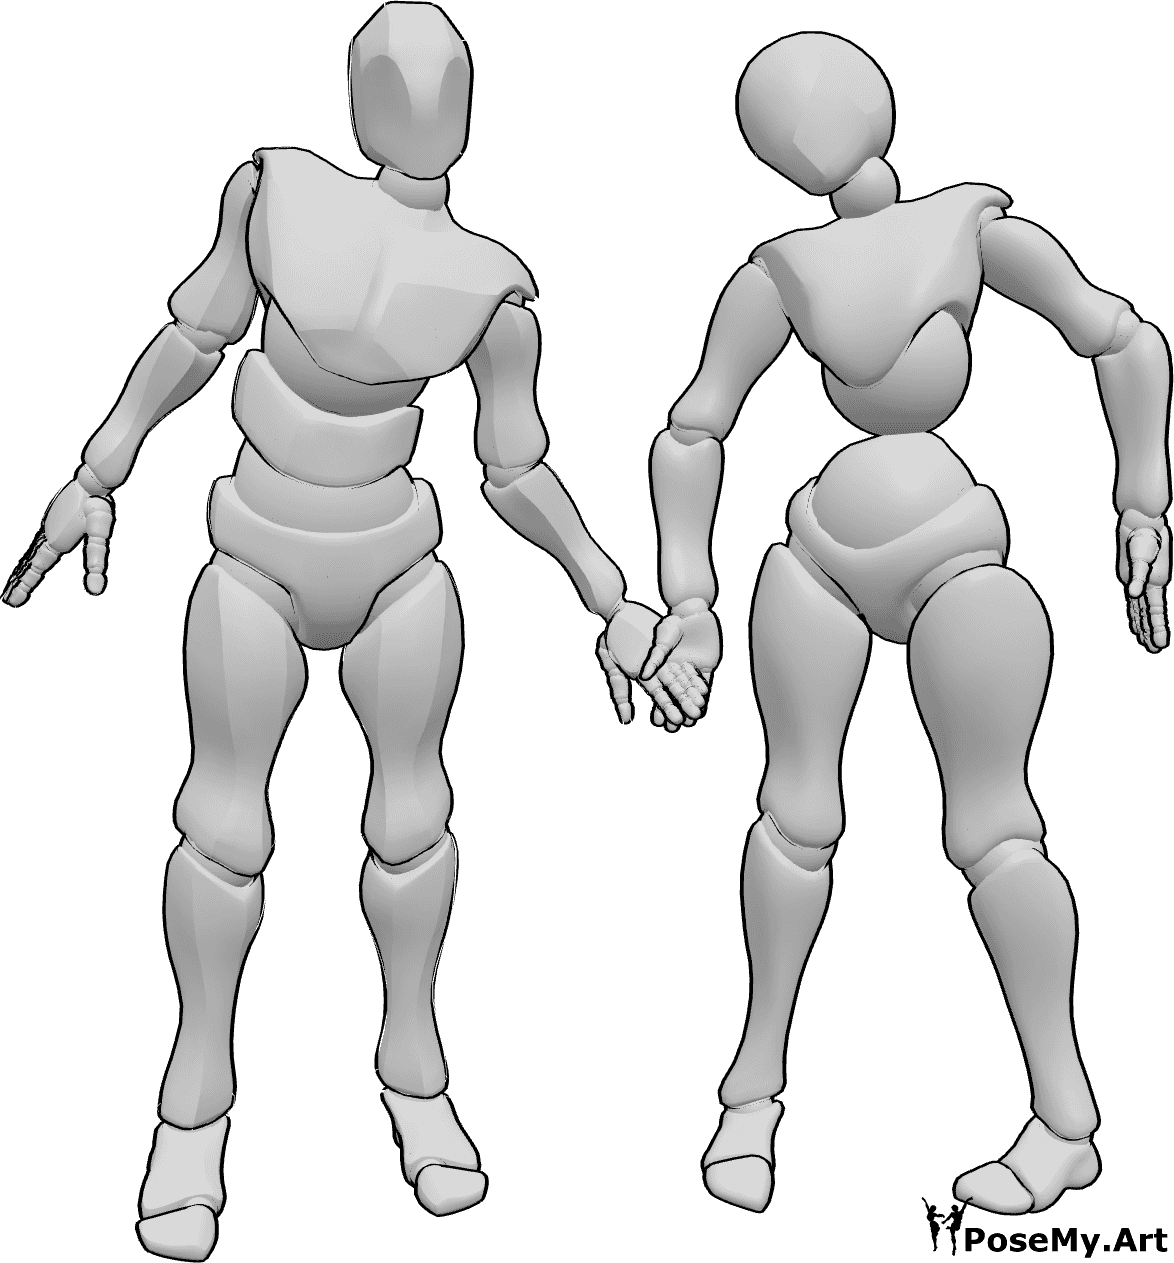 Referencia de poses- Espeluznante pose de pareja zombi - Espeluznante pose de pareja de zombi femenino y masculino